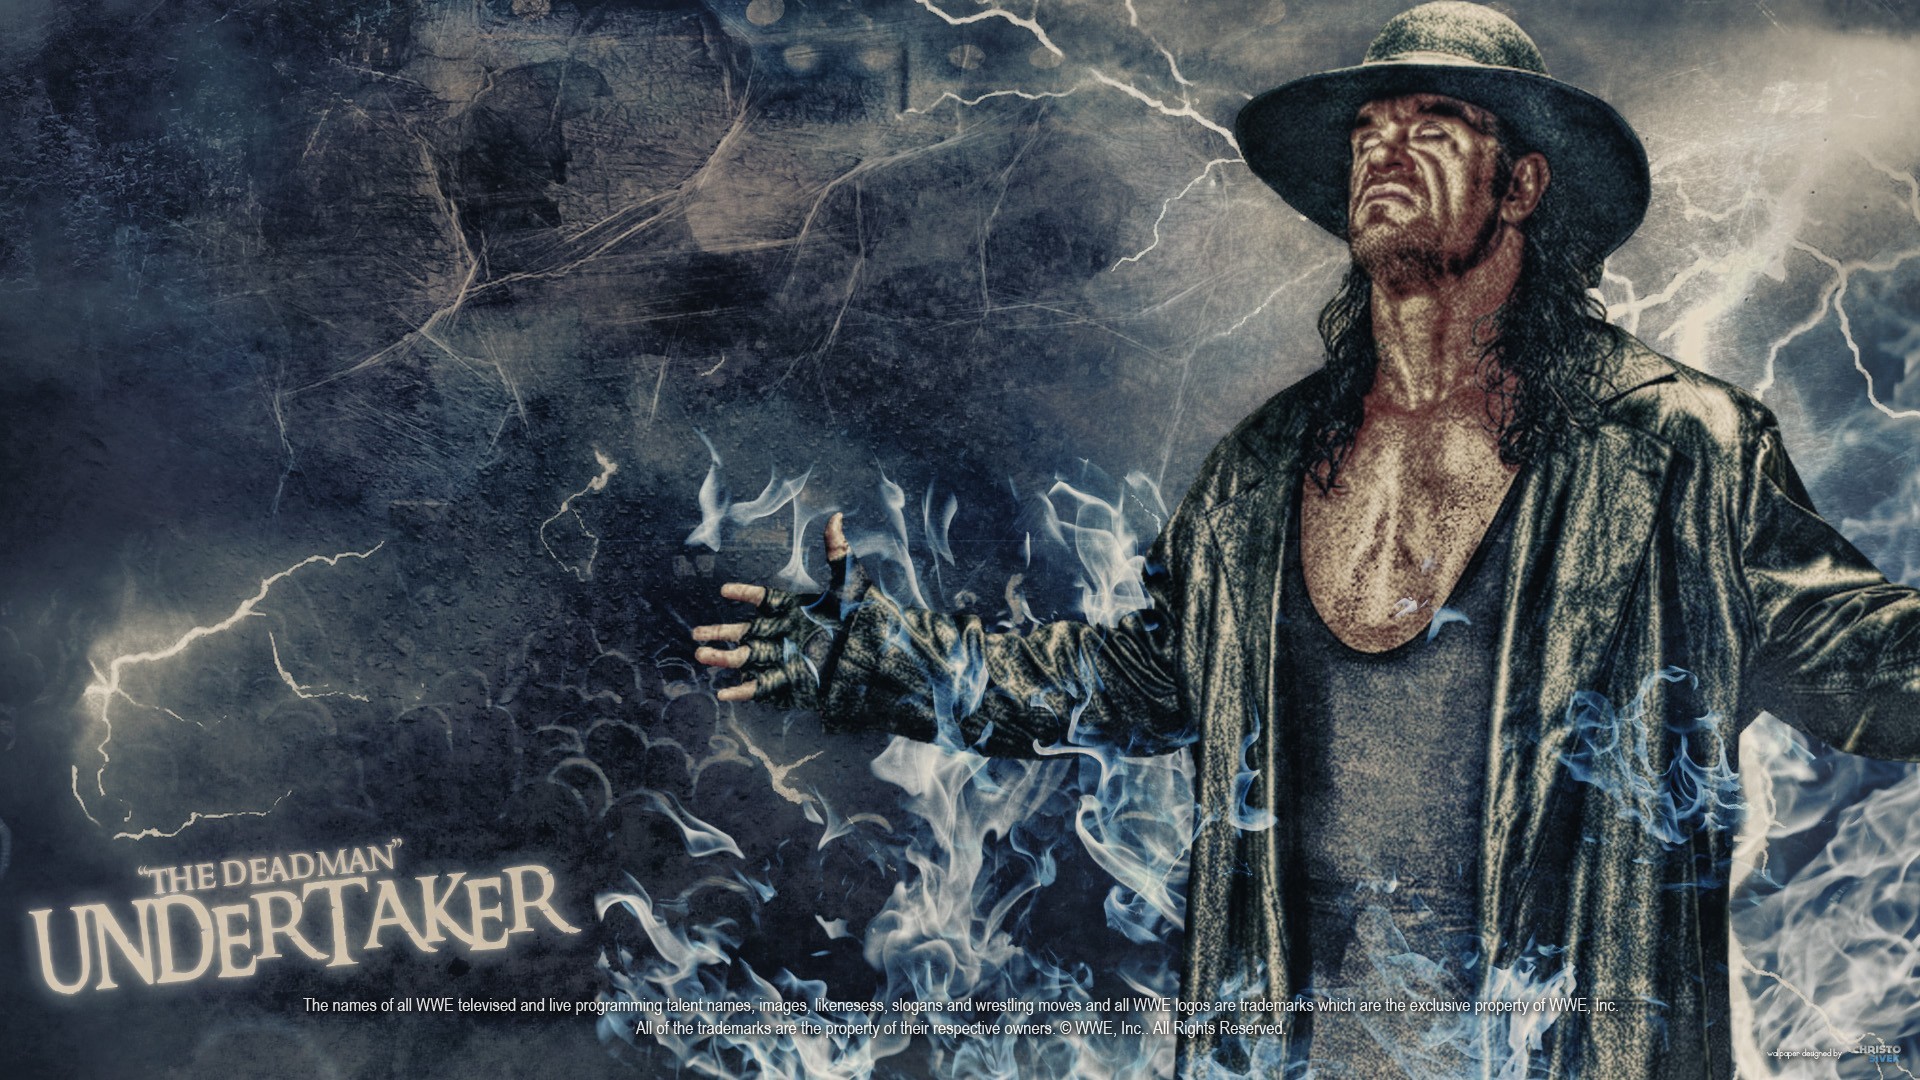 1920x1080  Undertaker Ã¦Â¡ÅÃ© Â¢Ã¥Â£ Ã§ÂºÂ¸ - WWE(TNA)_Ã©€‰Ã¦‰‹Ã¦Â¡ÅÃ© Â¢Ã¥Â£ Ã§ÂºÂ¸ - WWEÃ§Å½Â¯Ã§  ÆÃ¦'”